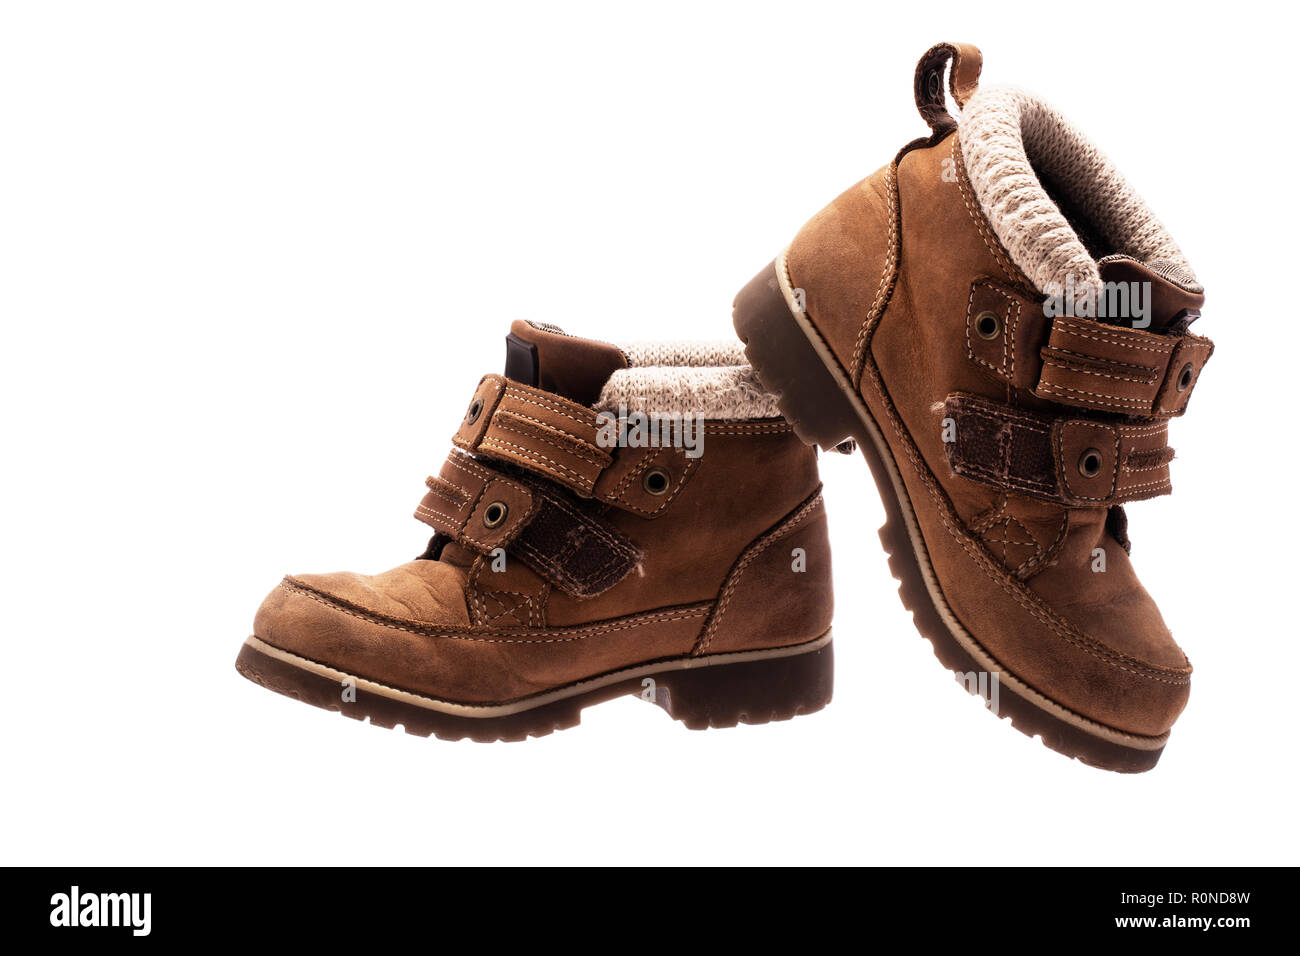 Kinder baby Schuhe. Orthopädischen Stiefel aus Leder Stockfotografie - Alamy